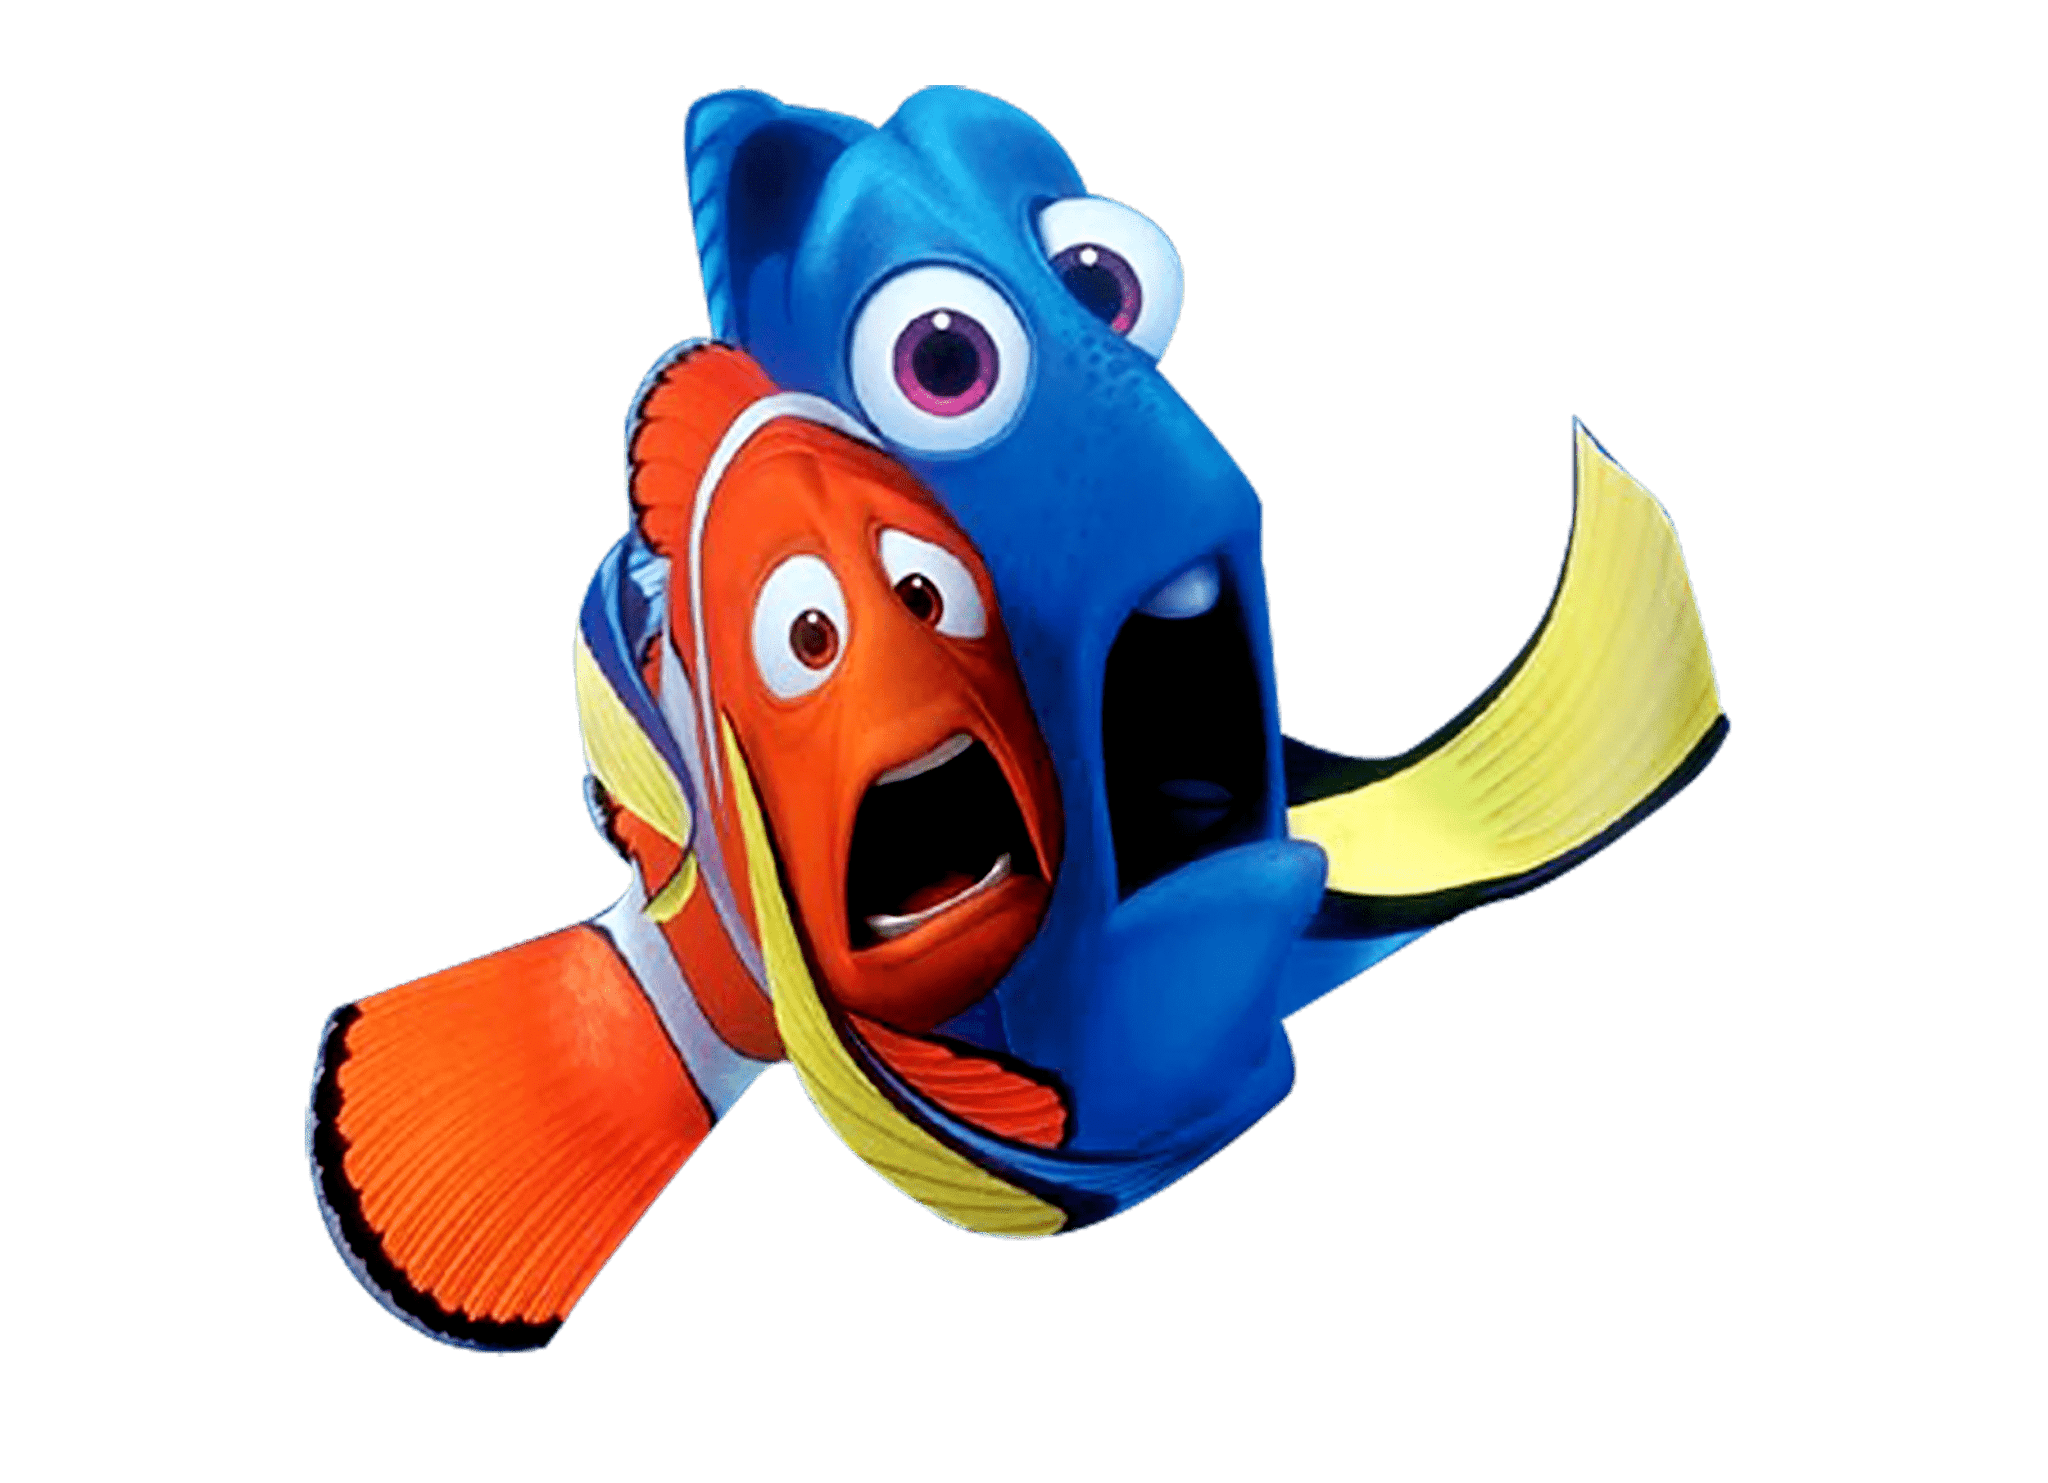 Imágenes clipart de Buscando a Nemo PNG fondo transparente